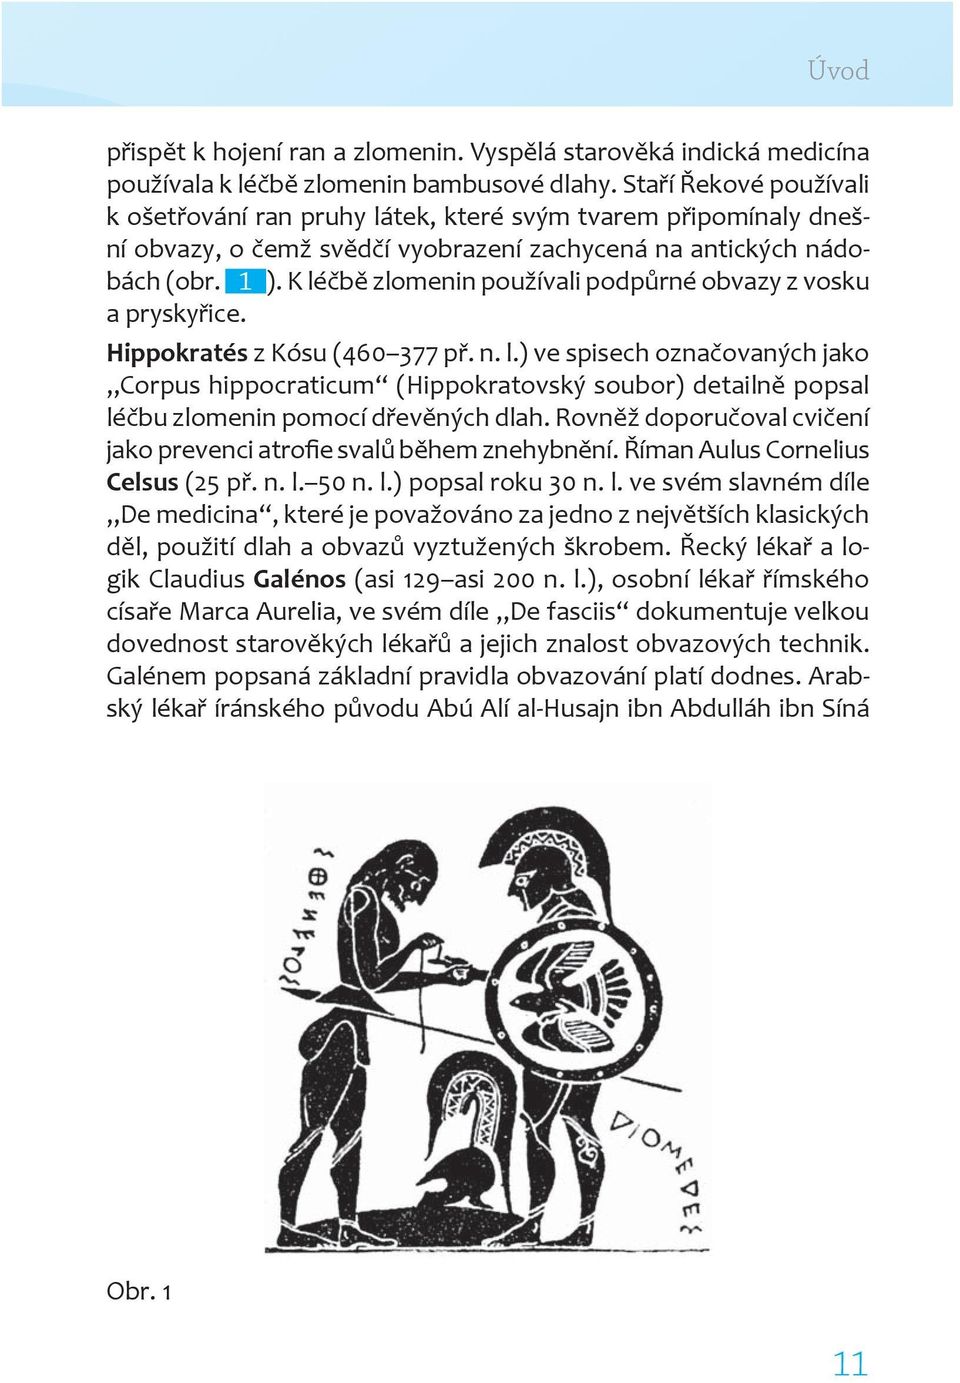 K léčbě zlomenin používali podpůrné obvazy z vosku a pryskyřice. Hippokratés z Kósu (460 377 př. n. l.) ve spisech označovaných jako Corpus hippocraticum (Hippokratovský soubor) detailně popsal léčbu zlomenin pomocí dřevěných dlah.